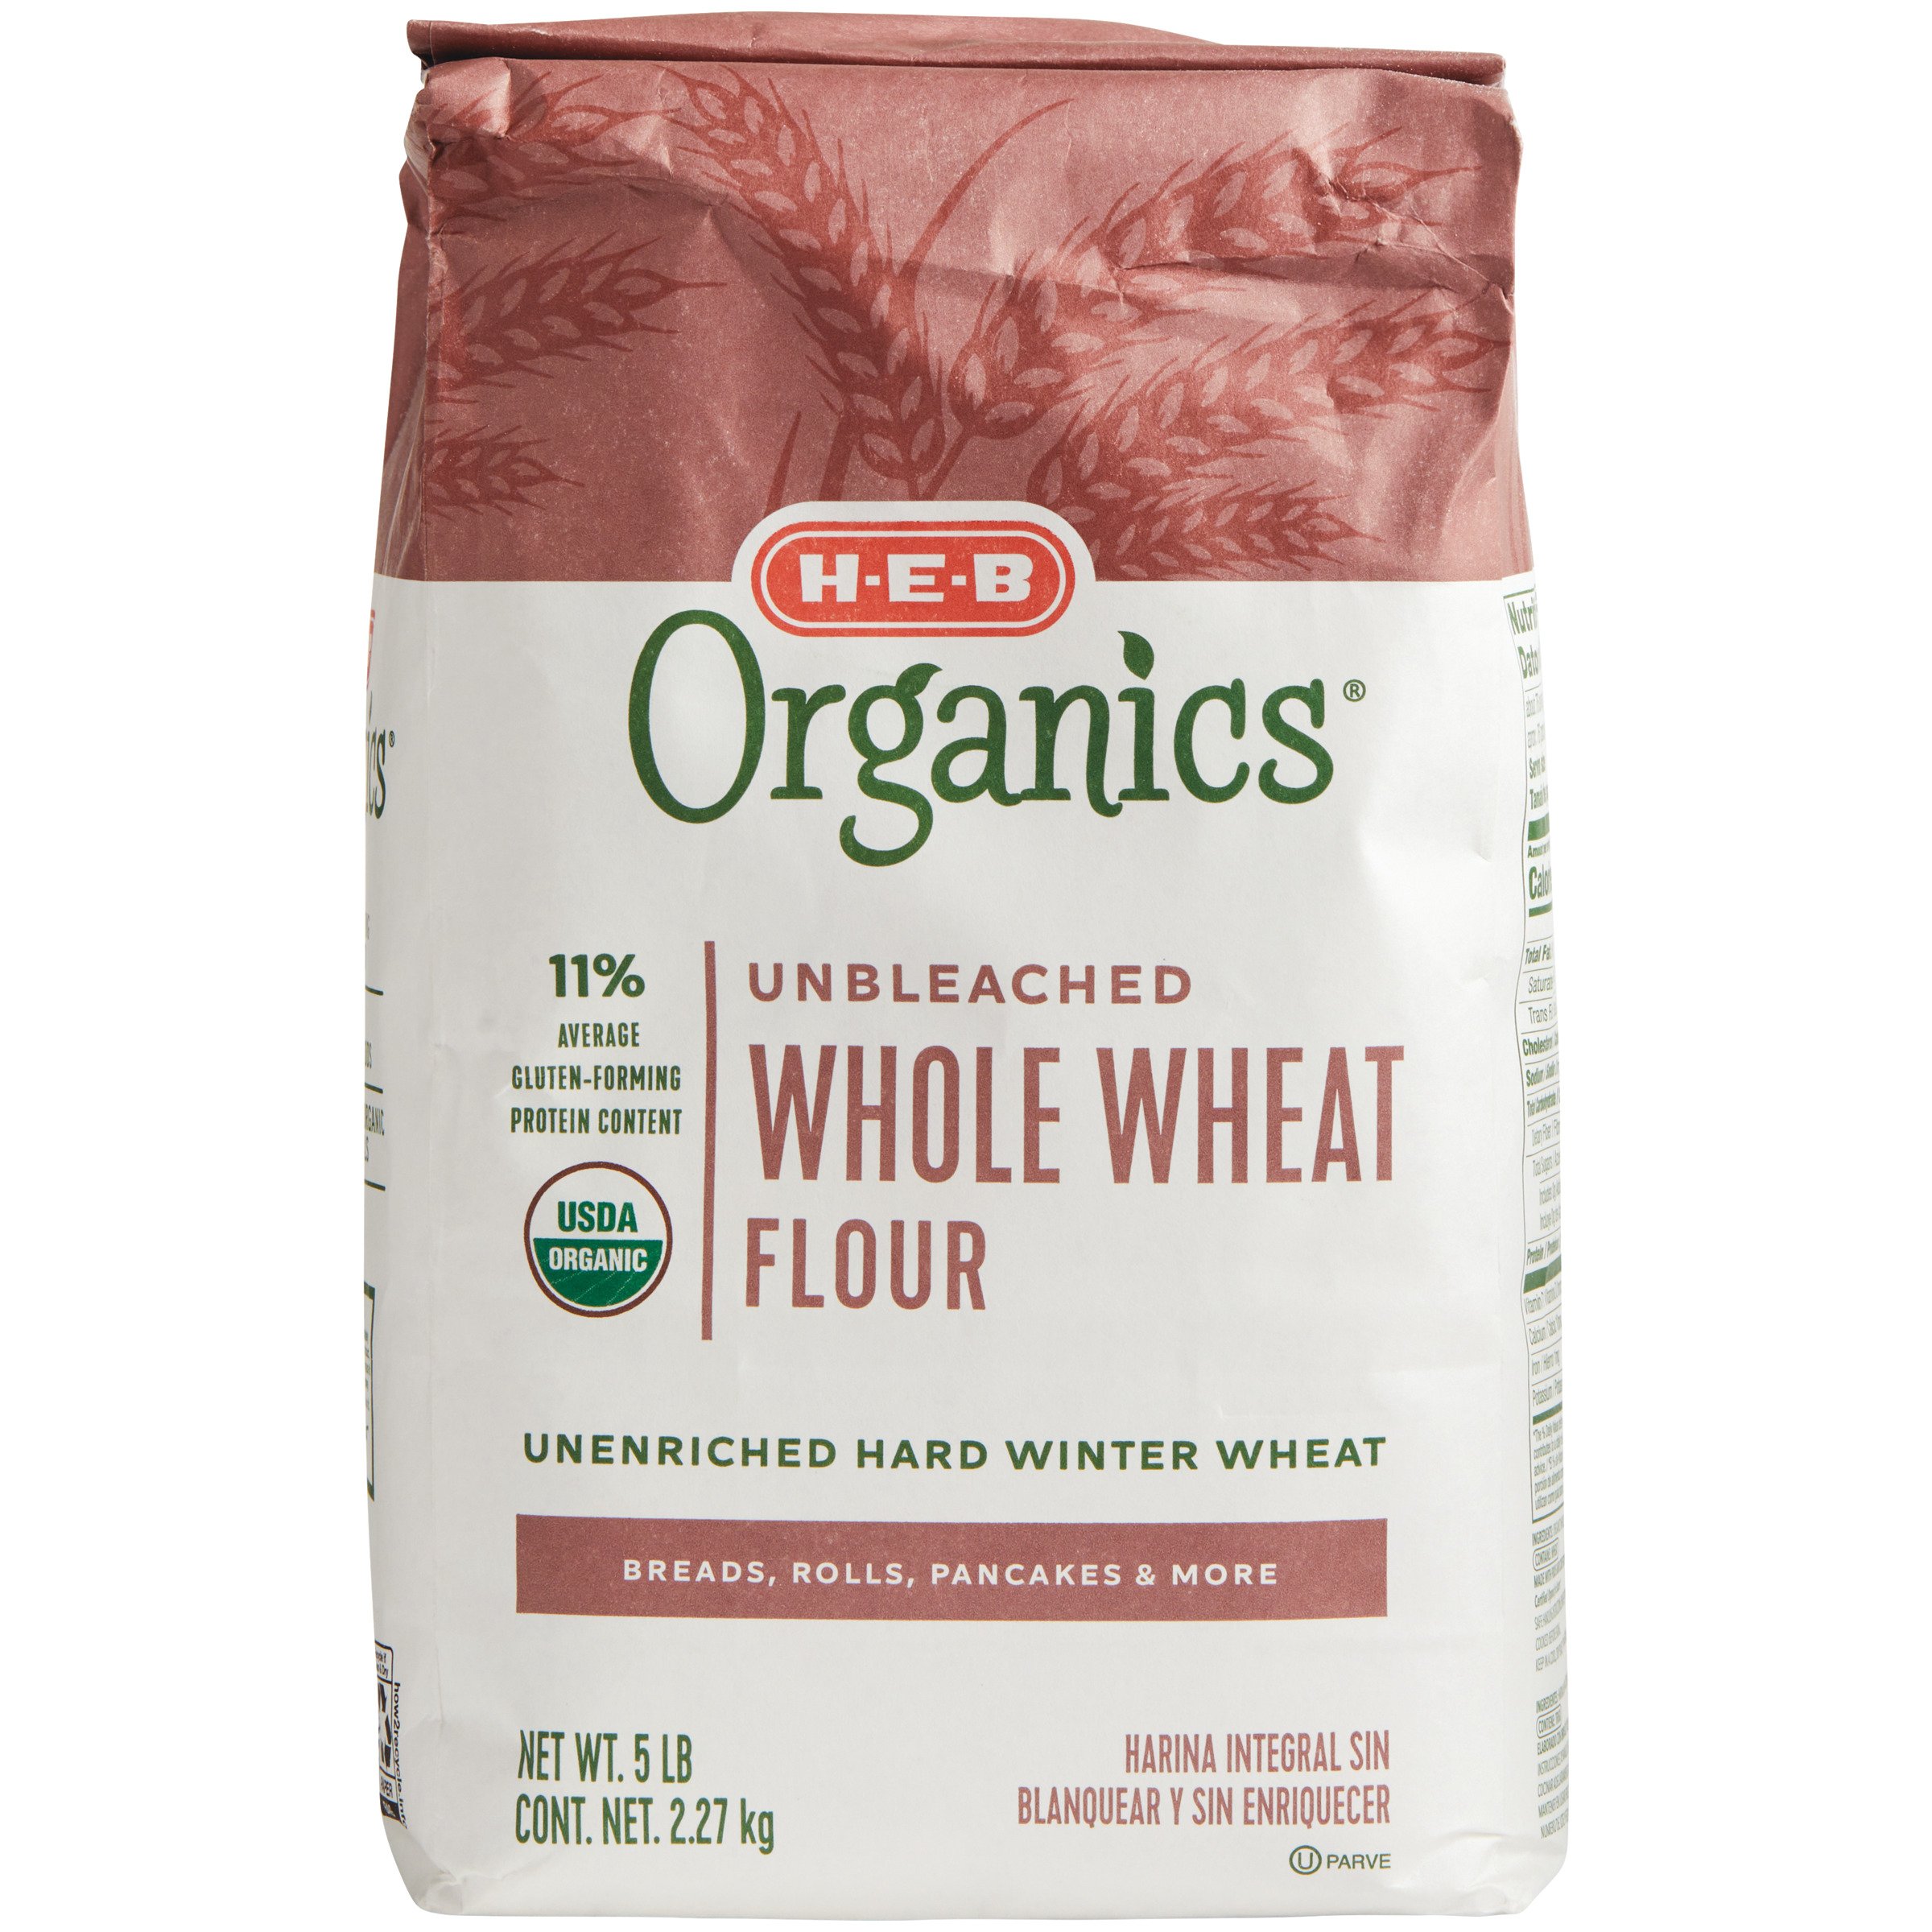 H E B Organics Whole Wheat Flour Shop Flour At H E B,What Does Vegan Mean In Food